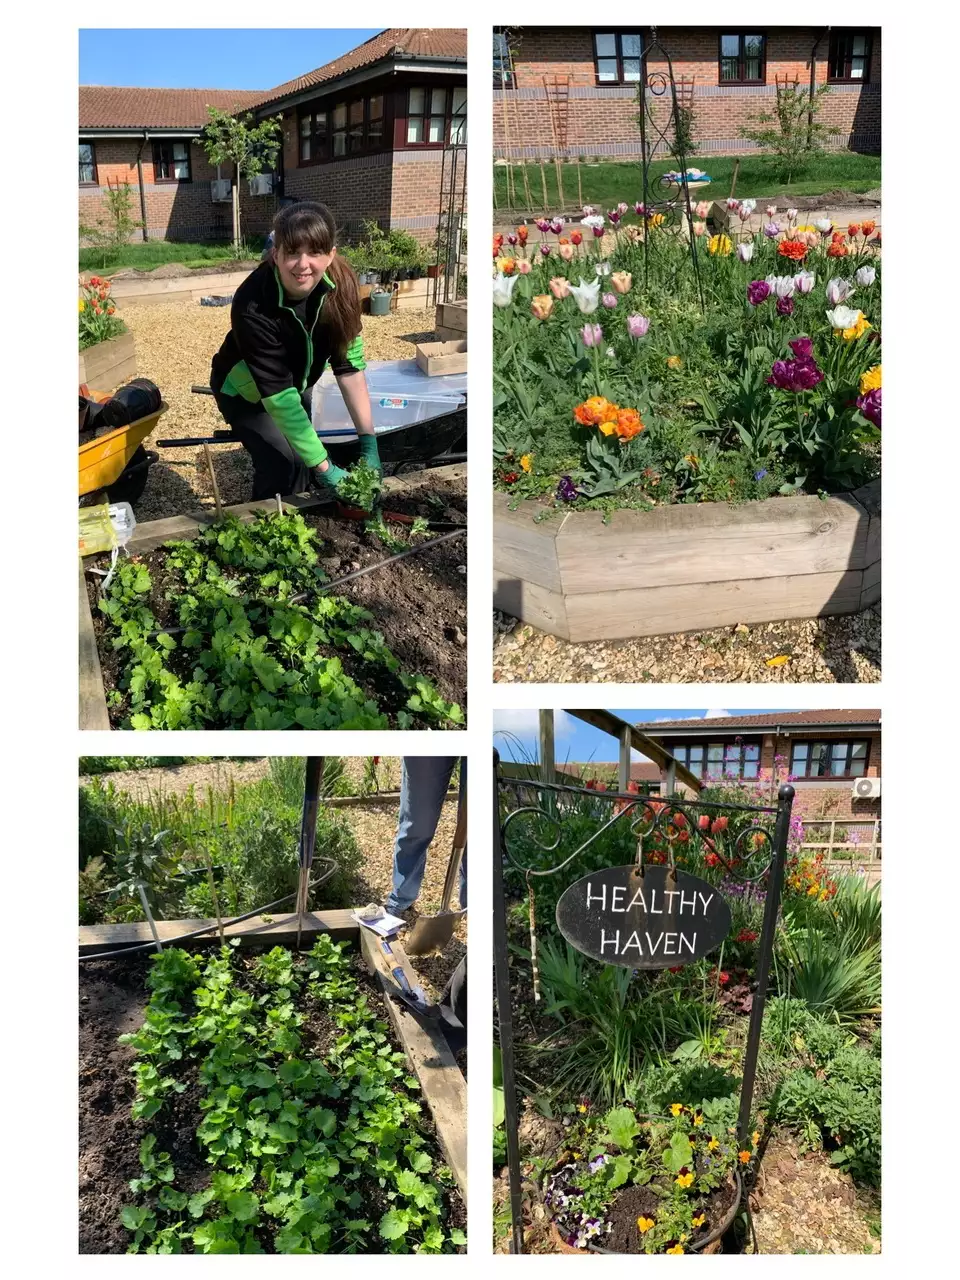 A visit to the Healthy Haven Garden | Asda Totton